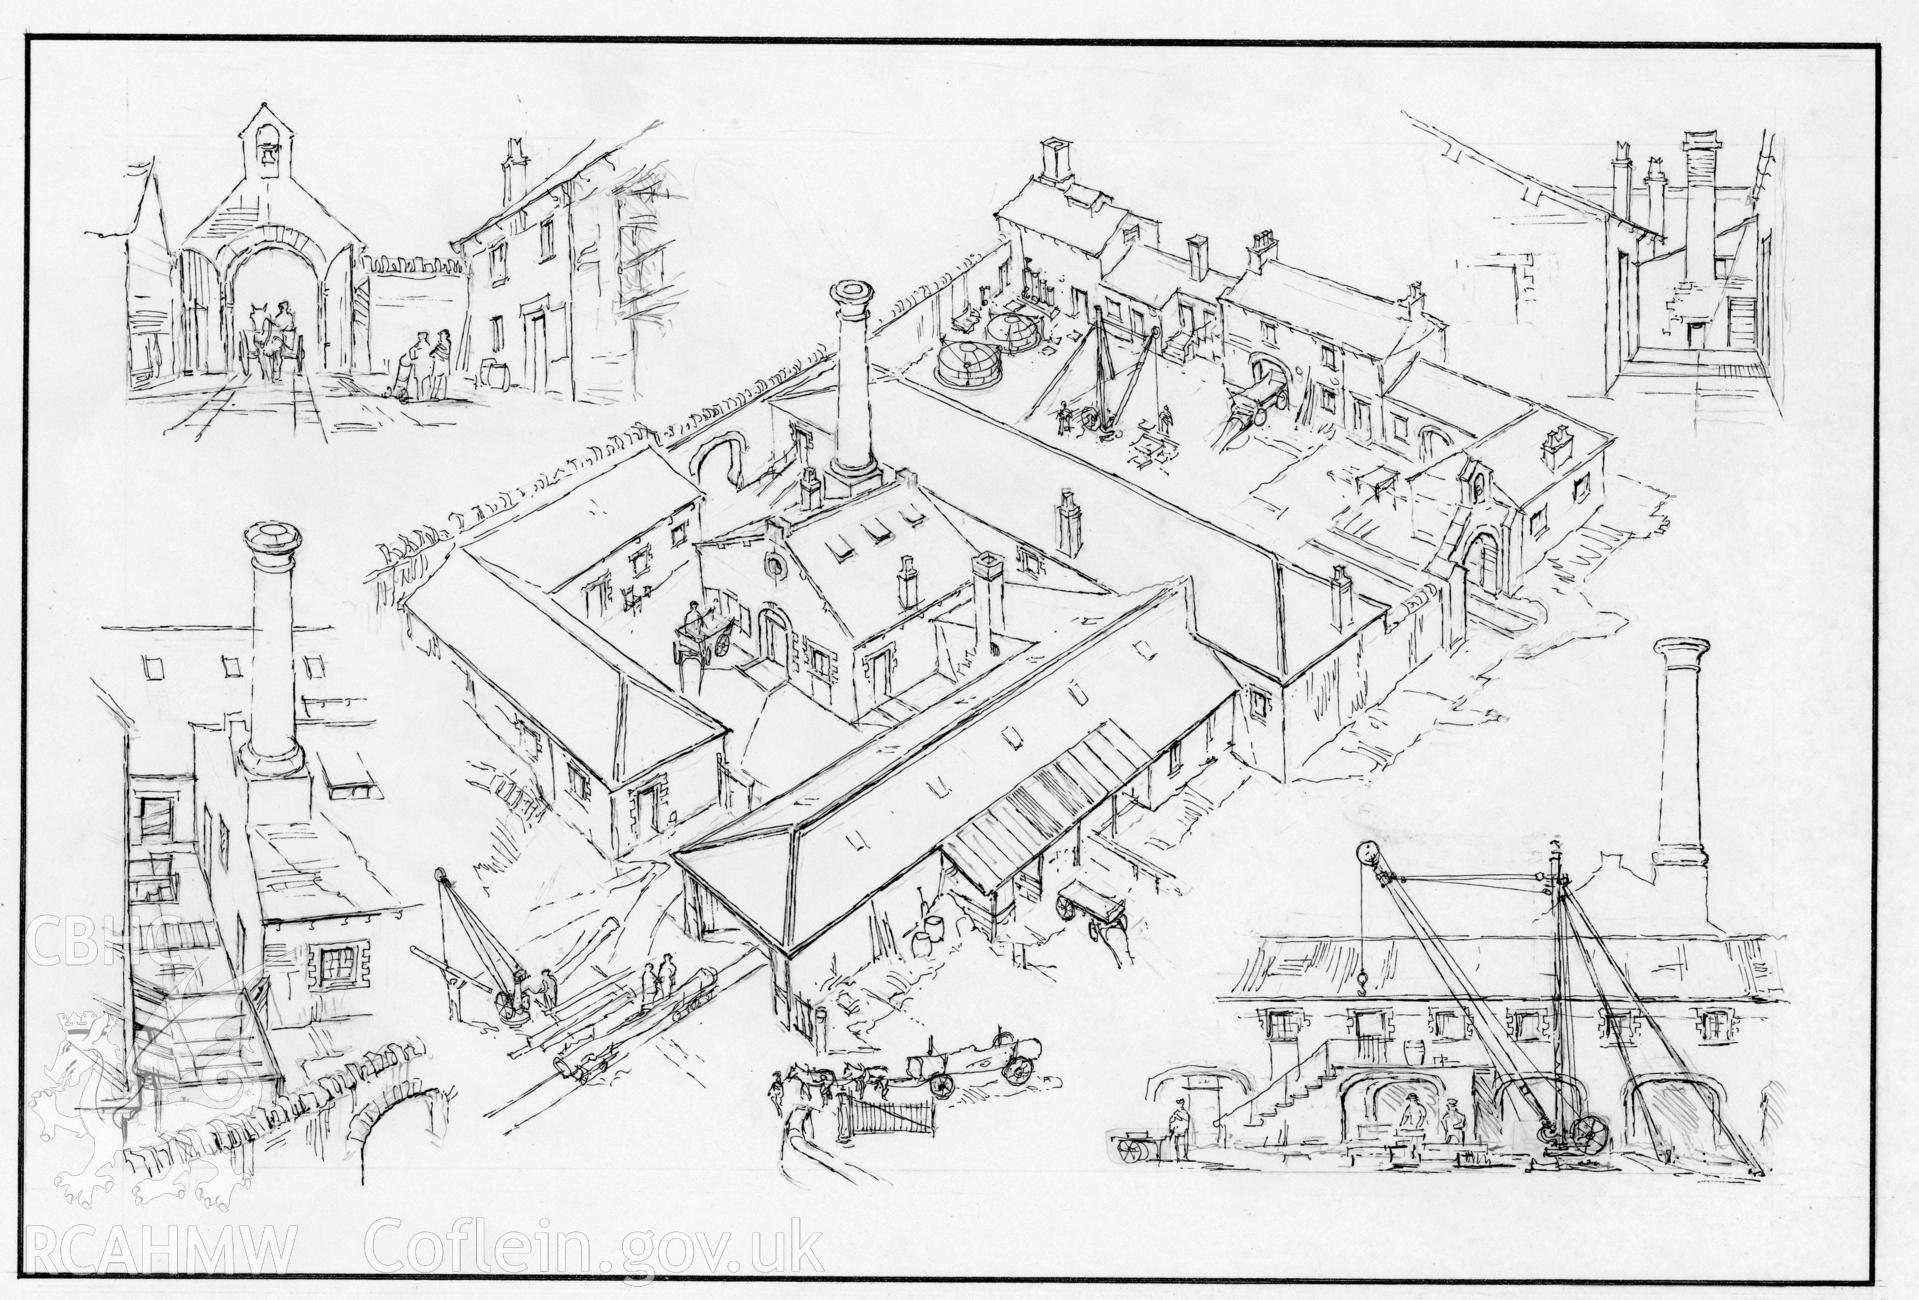 Parc Glynllifon Estate Workshops - Aerial View: original (ink) drawing.